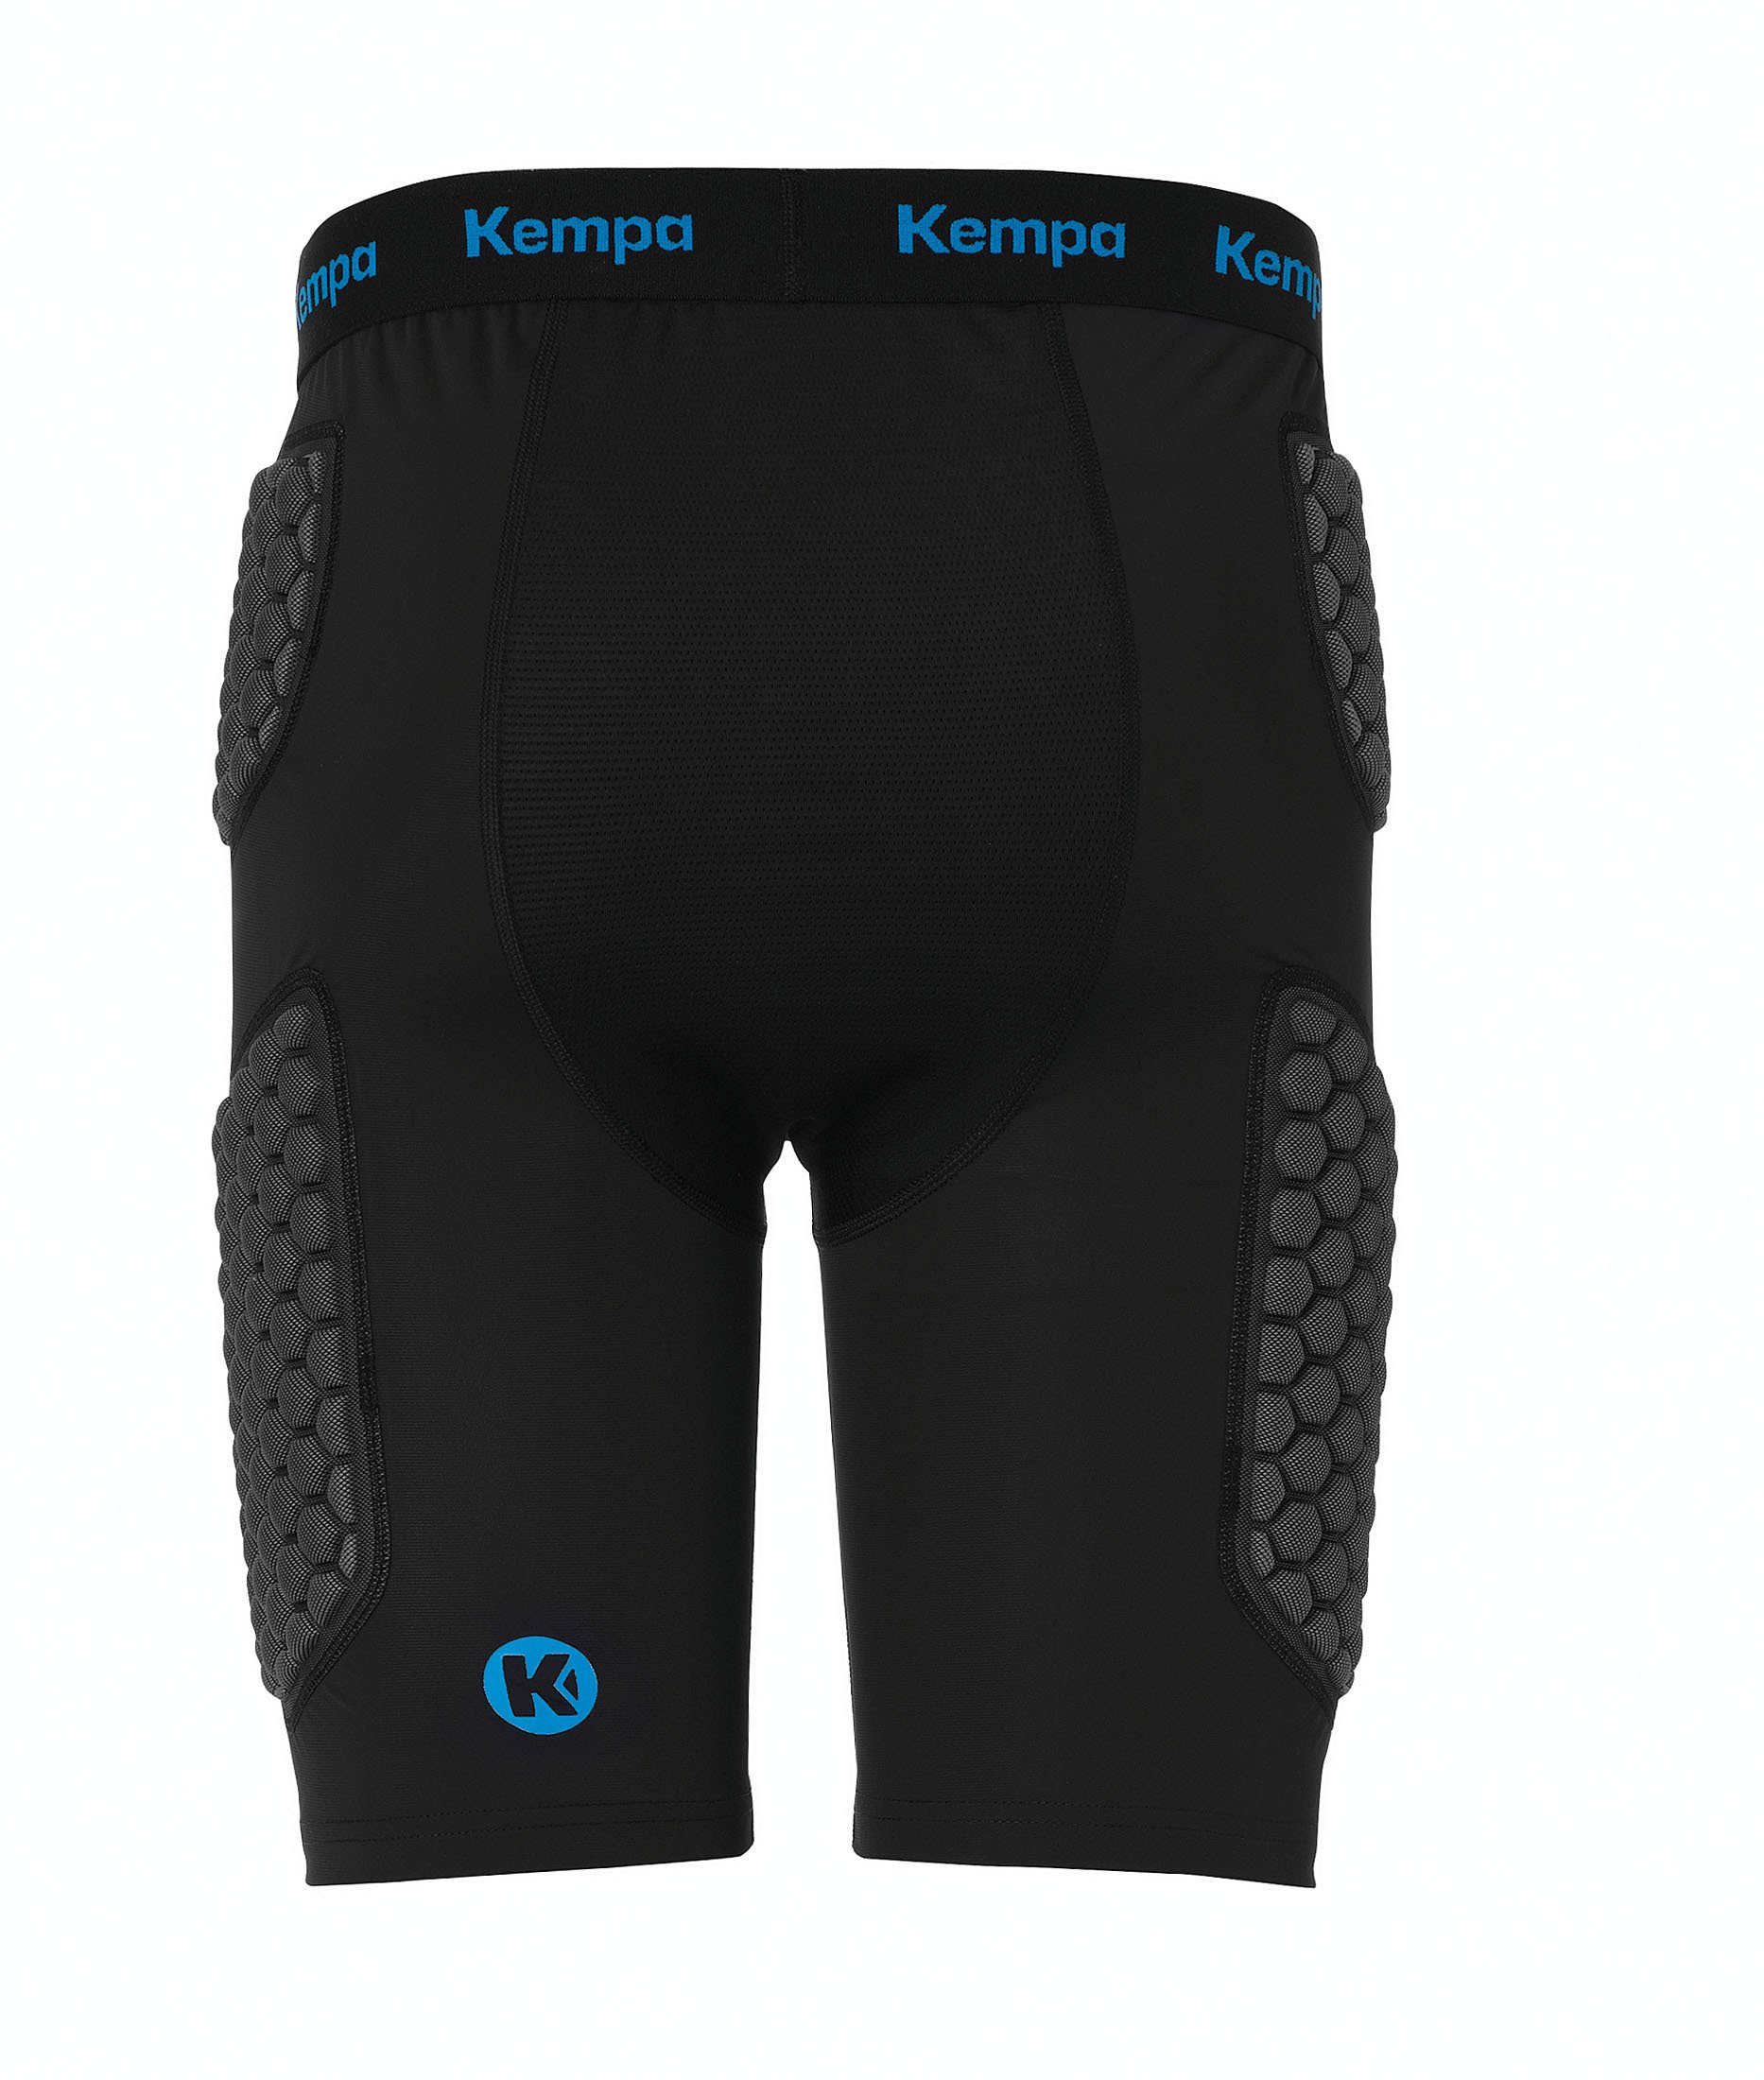 Kempa Shorts PROTECTION Protektorenshorts Protection Kempa elastisch SHORTS,